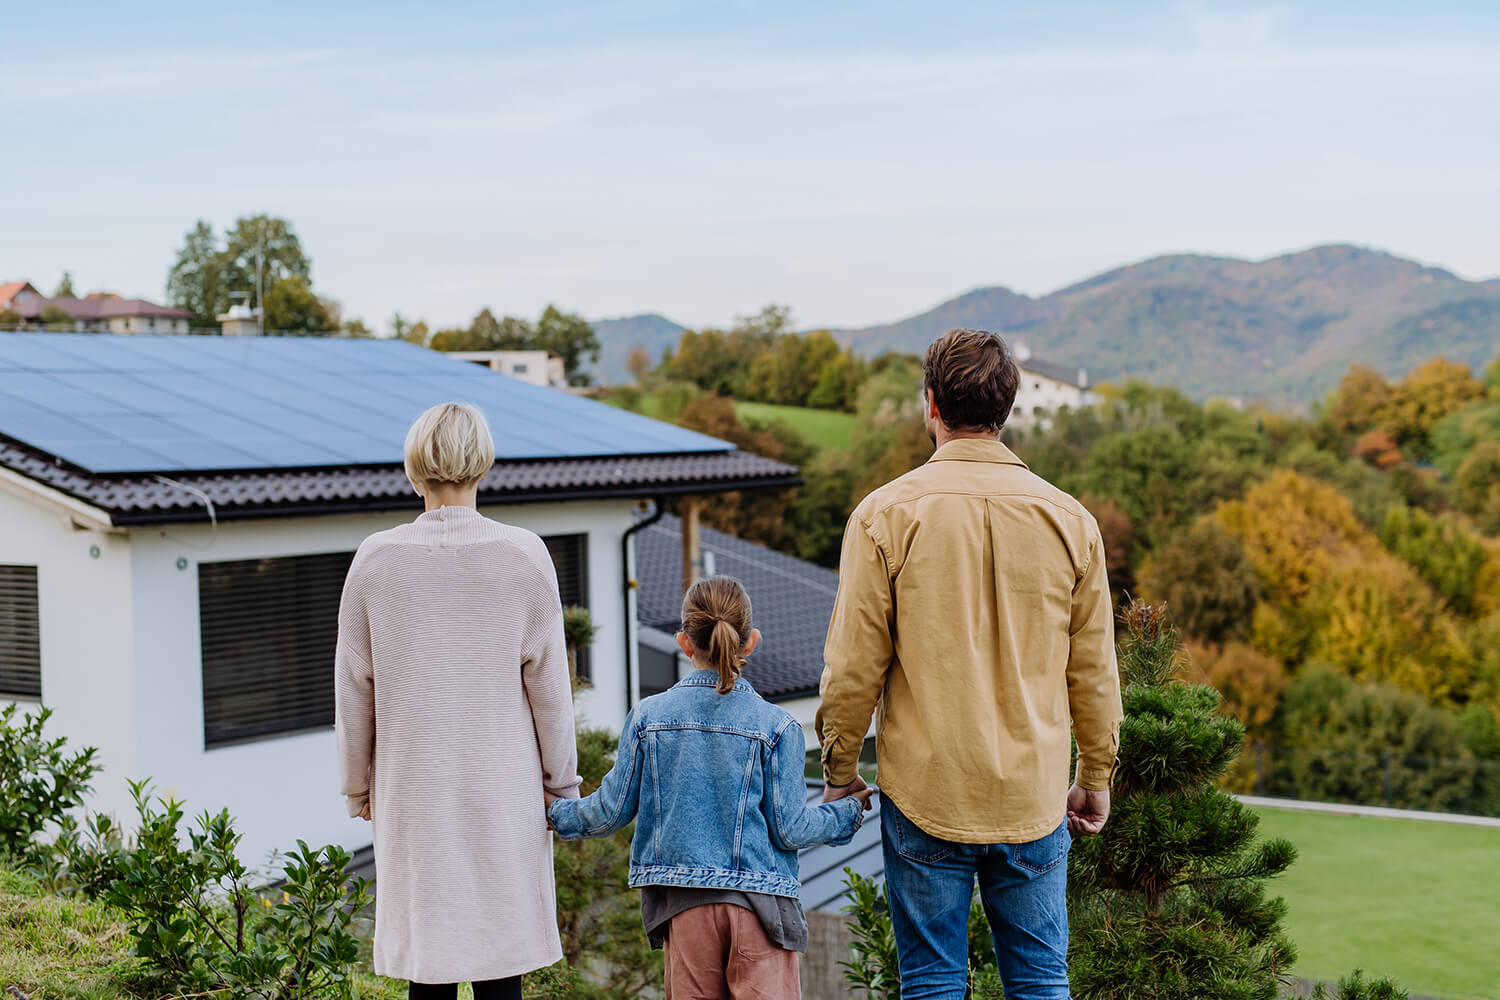 Eime Familie steht vor einem Haus mit einer Solaranlage auf dem Dach. Die Familie ist von hinten zu sehen. 